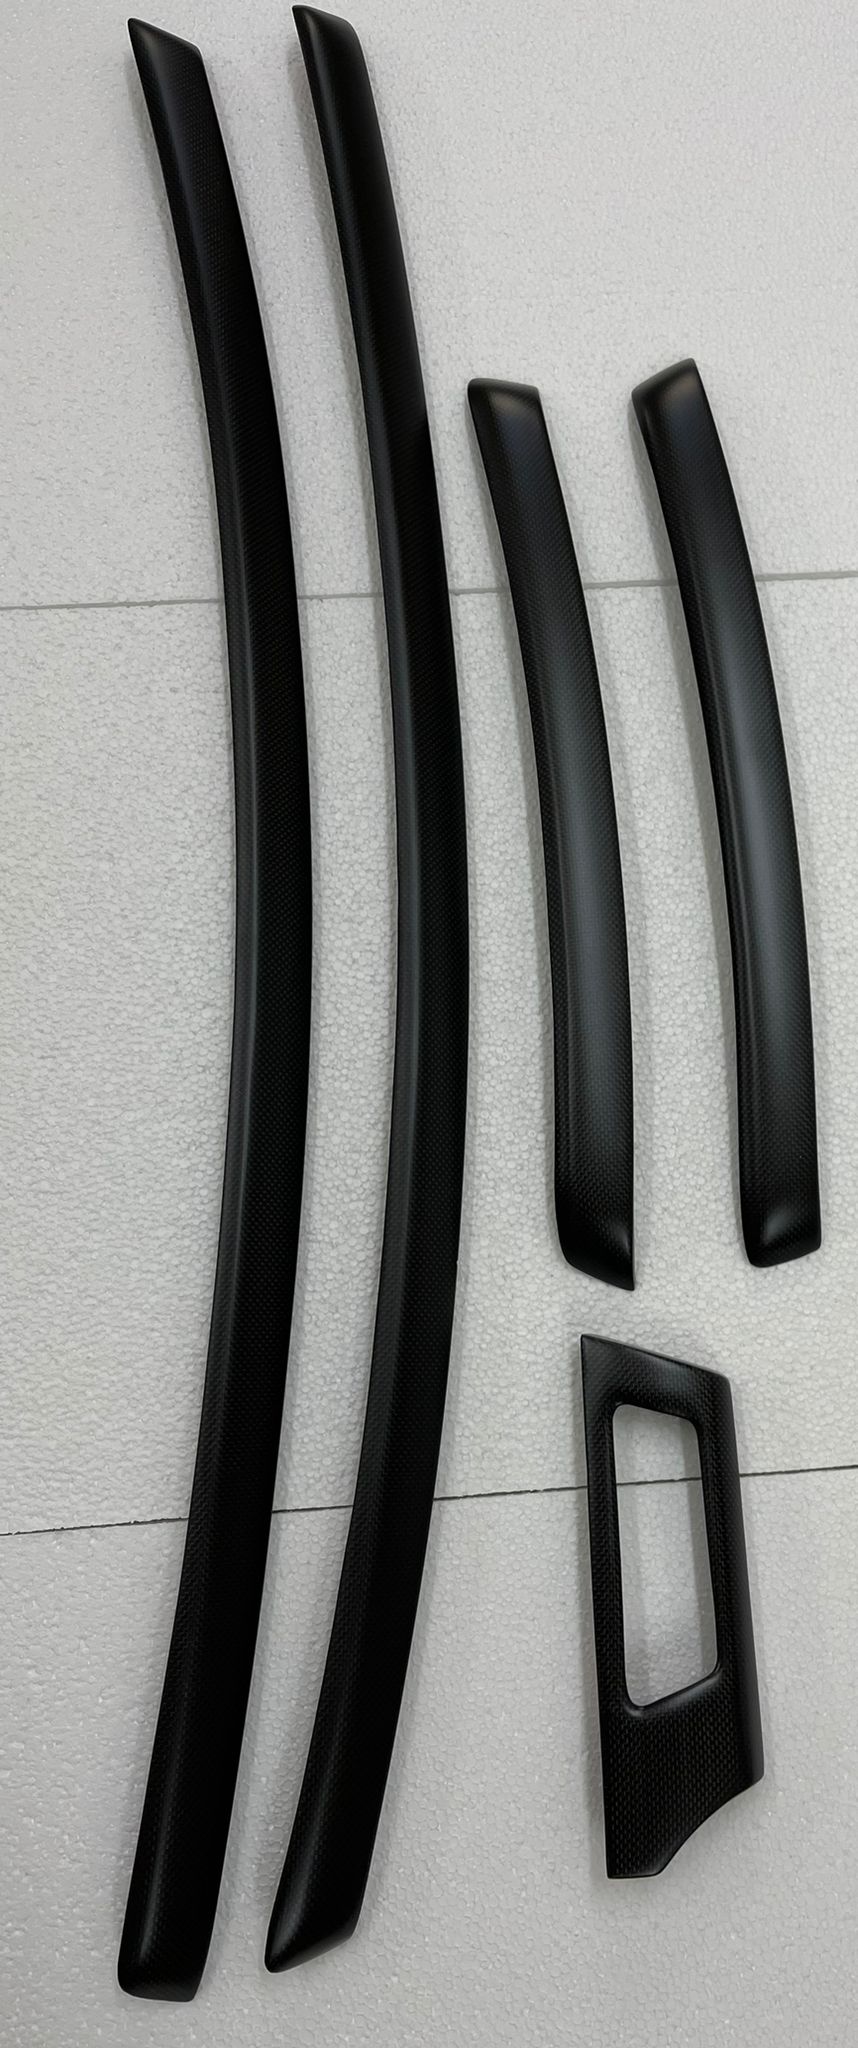 6-piece CARBON INTERIOR FOR THE BMW E90/92/93 M3